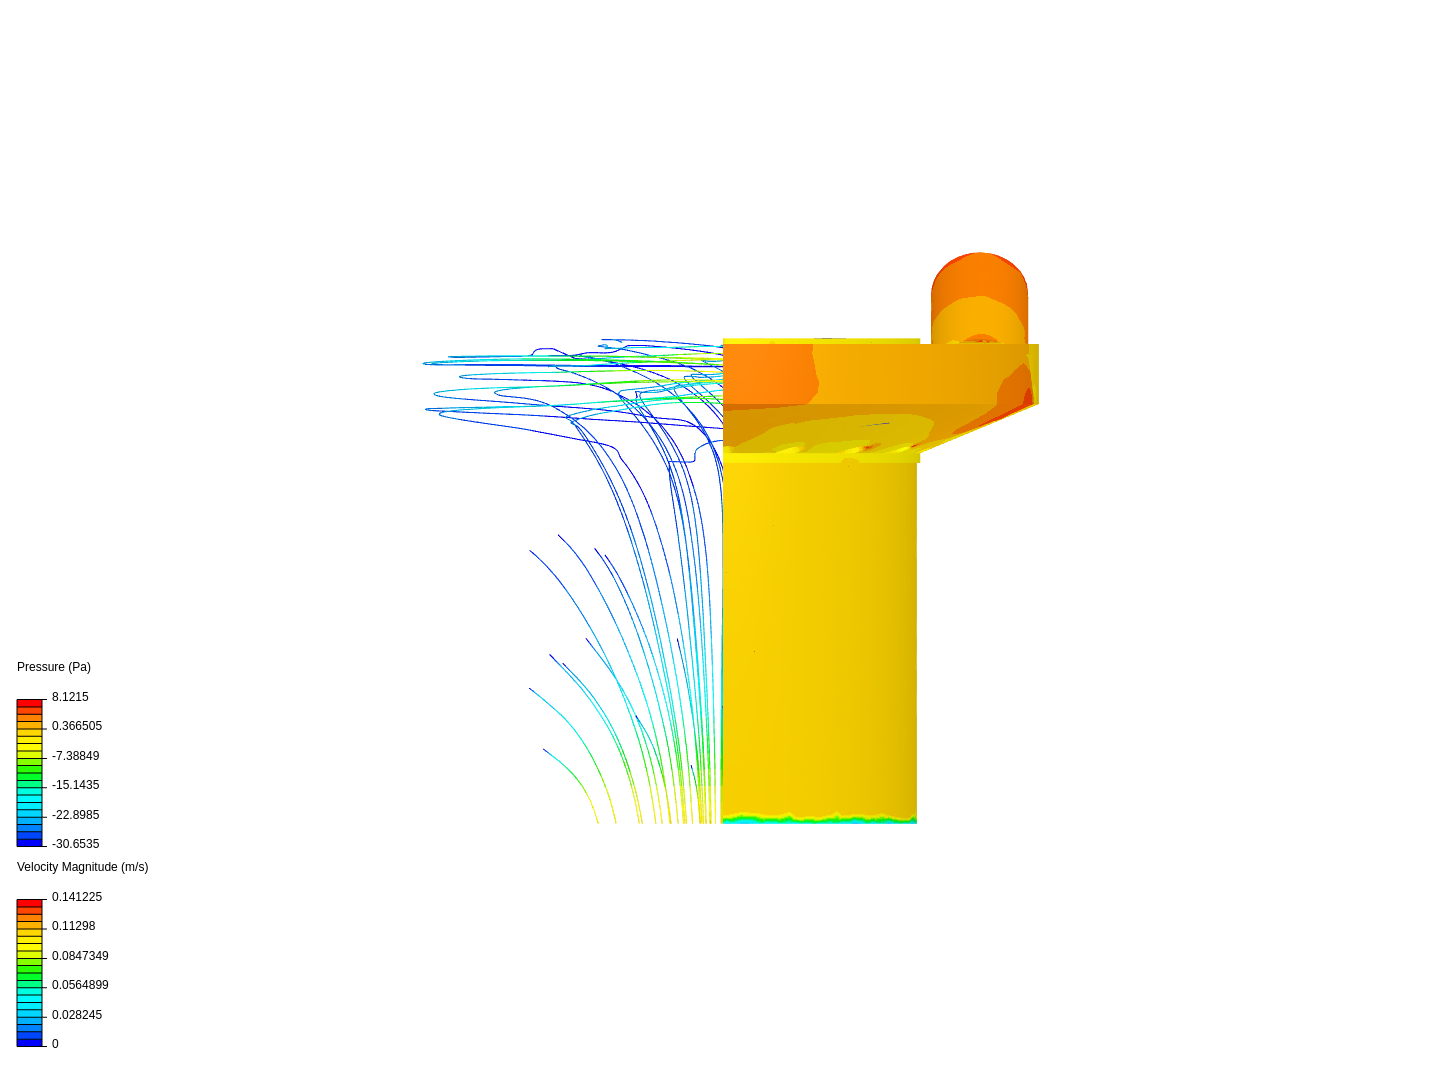 Turbine Simulation 1.3 (145 deg) image